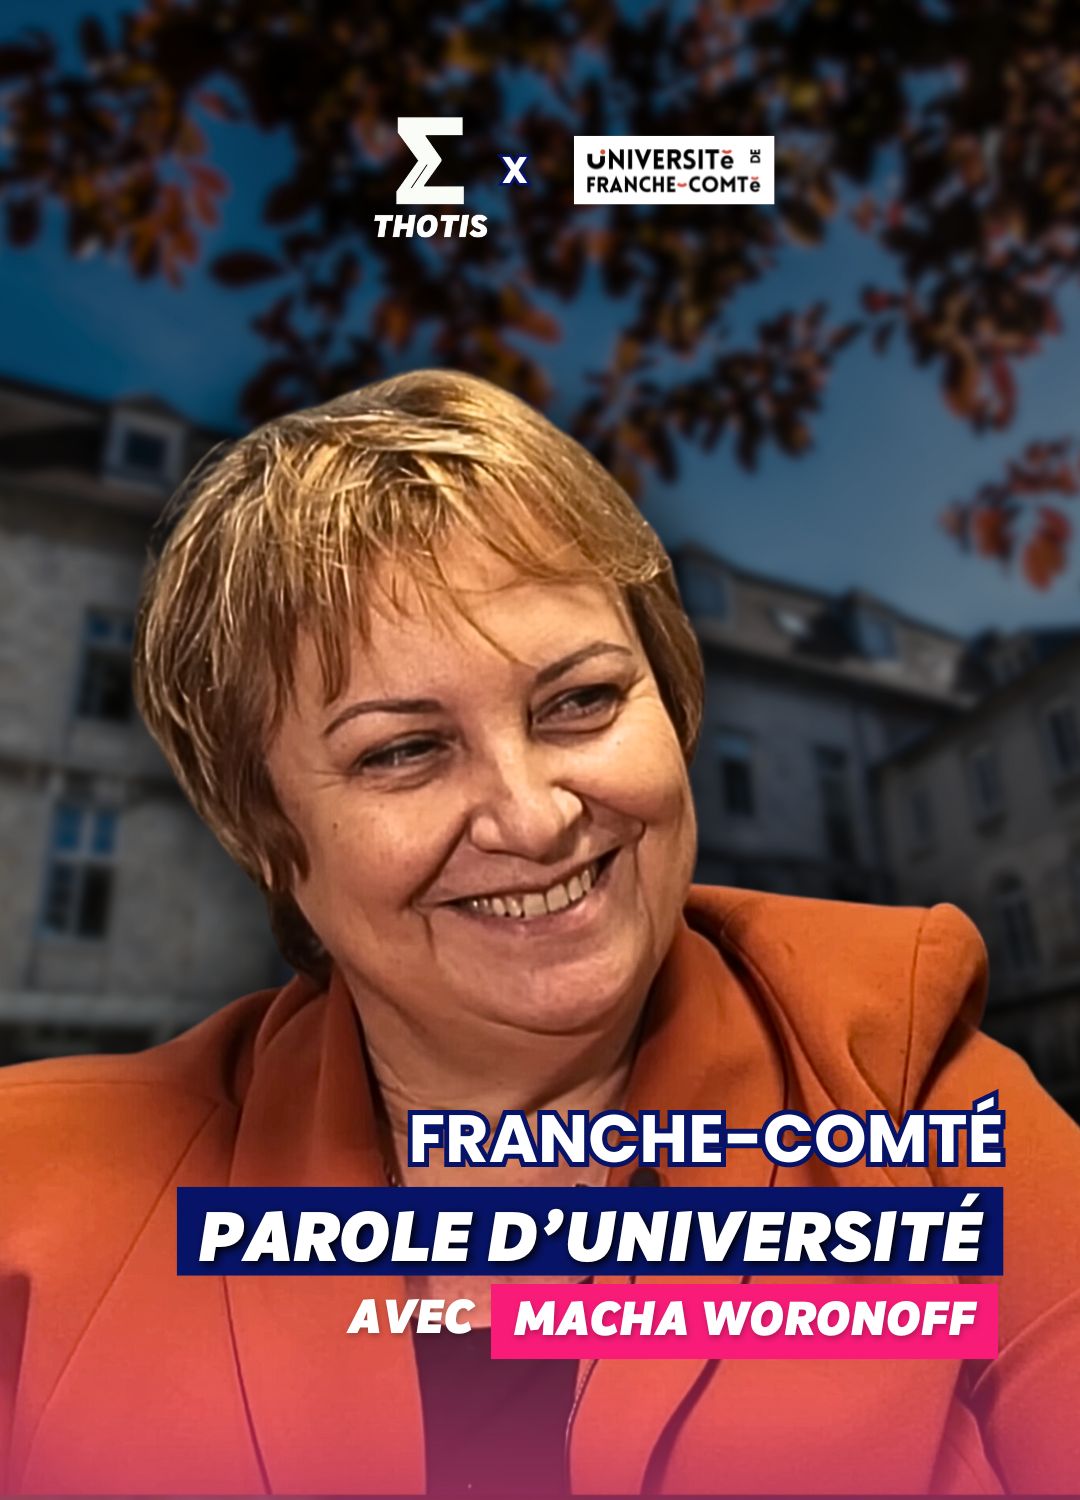 Parole d'université de Franche-Comté avec Macha Woronoff